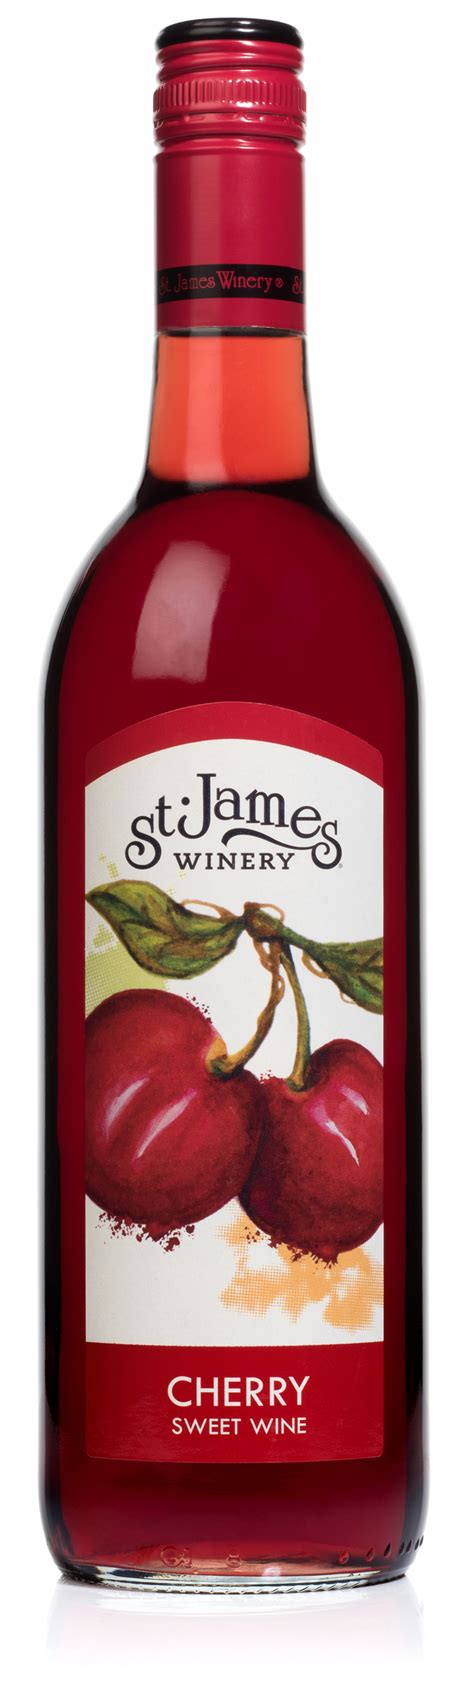 Award Winning Cherry Wine St James Winery